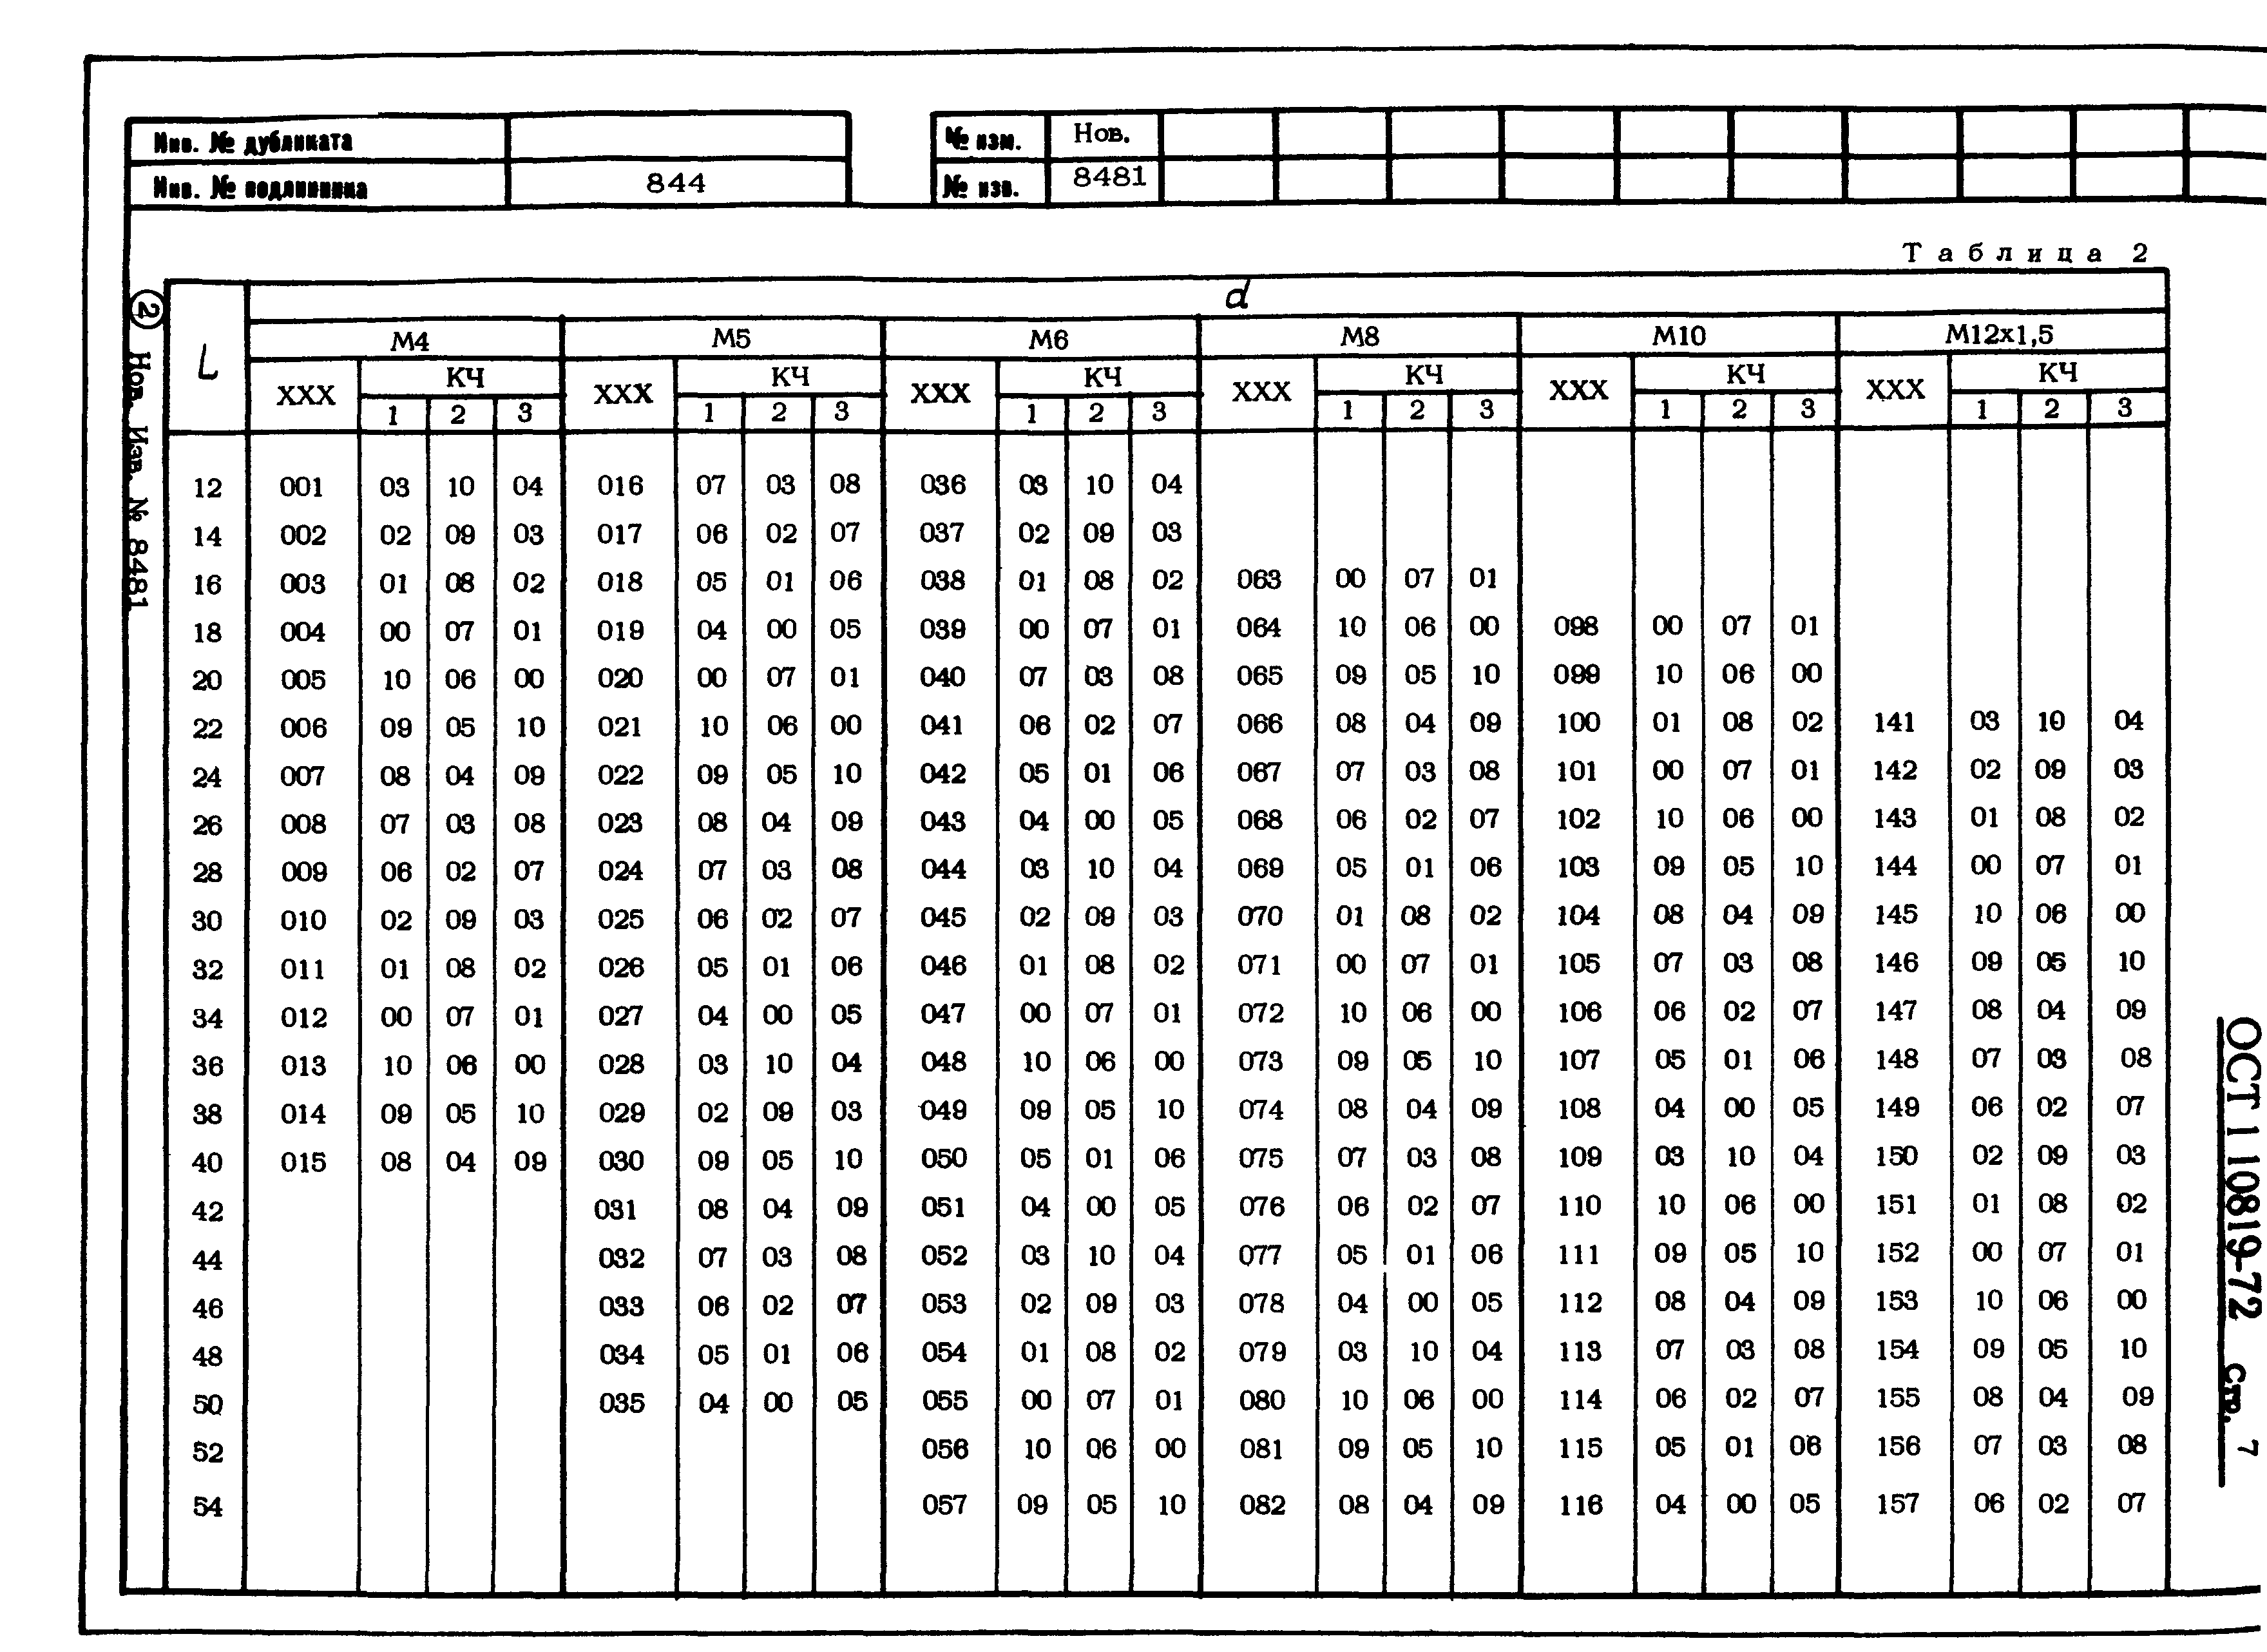 ОСТ 1 10819-72